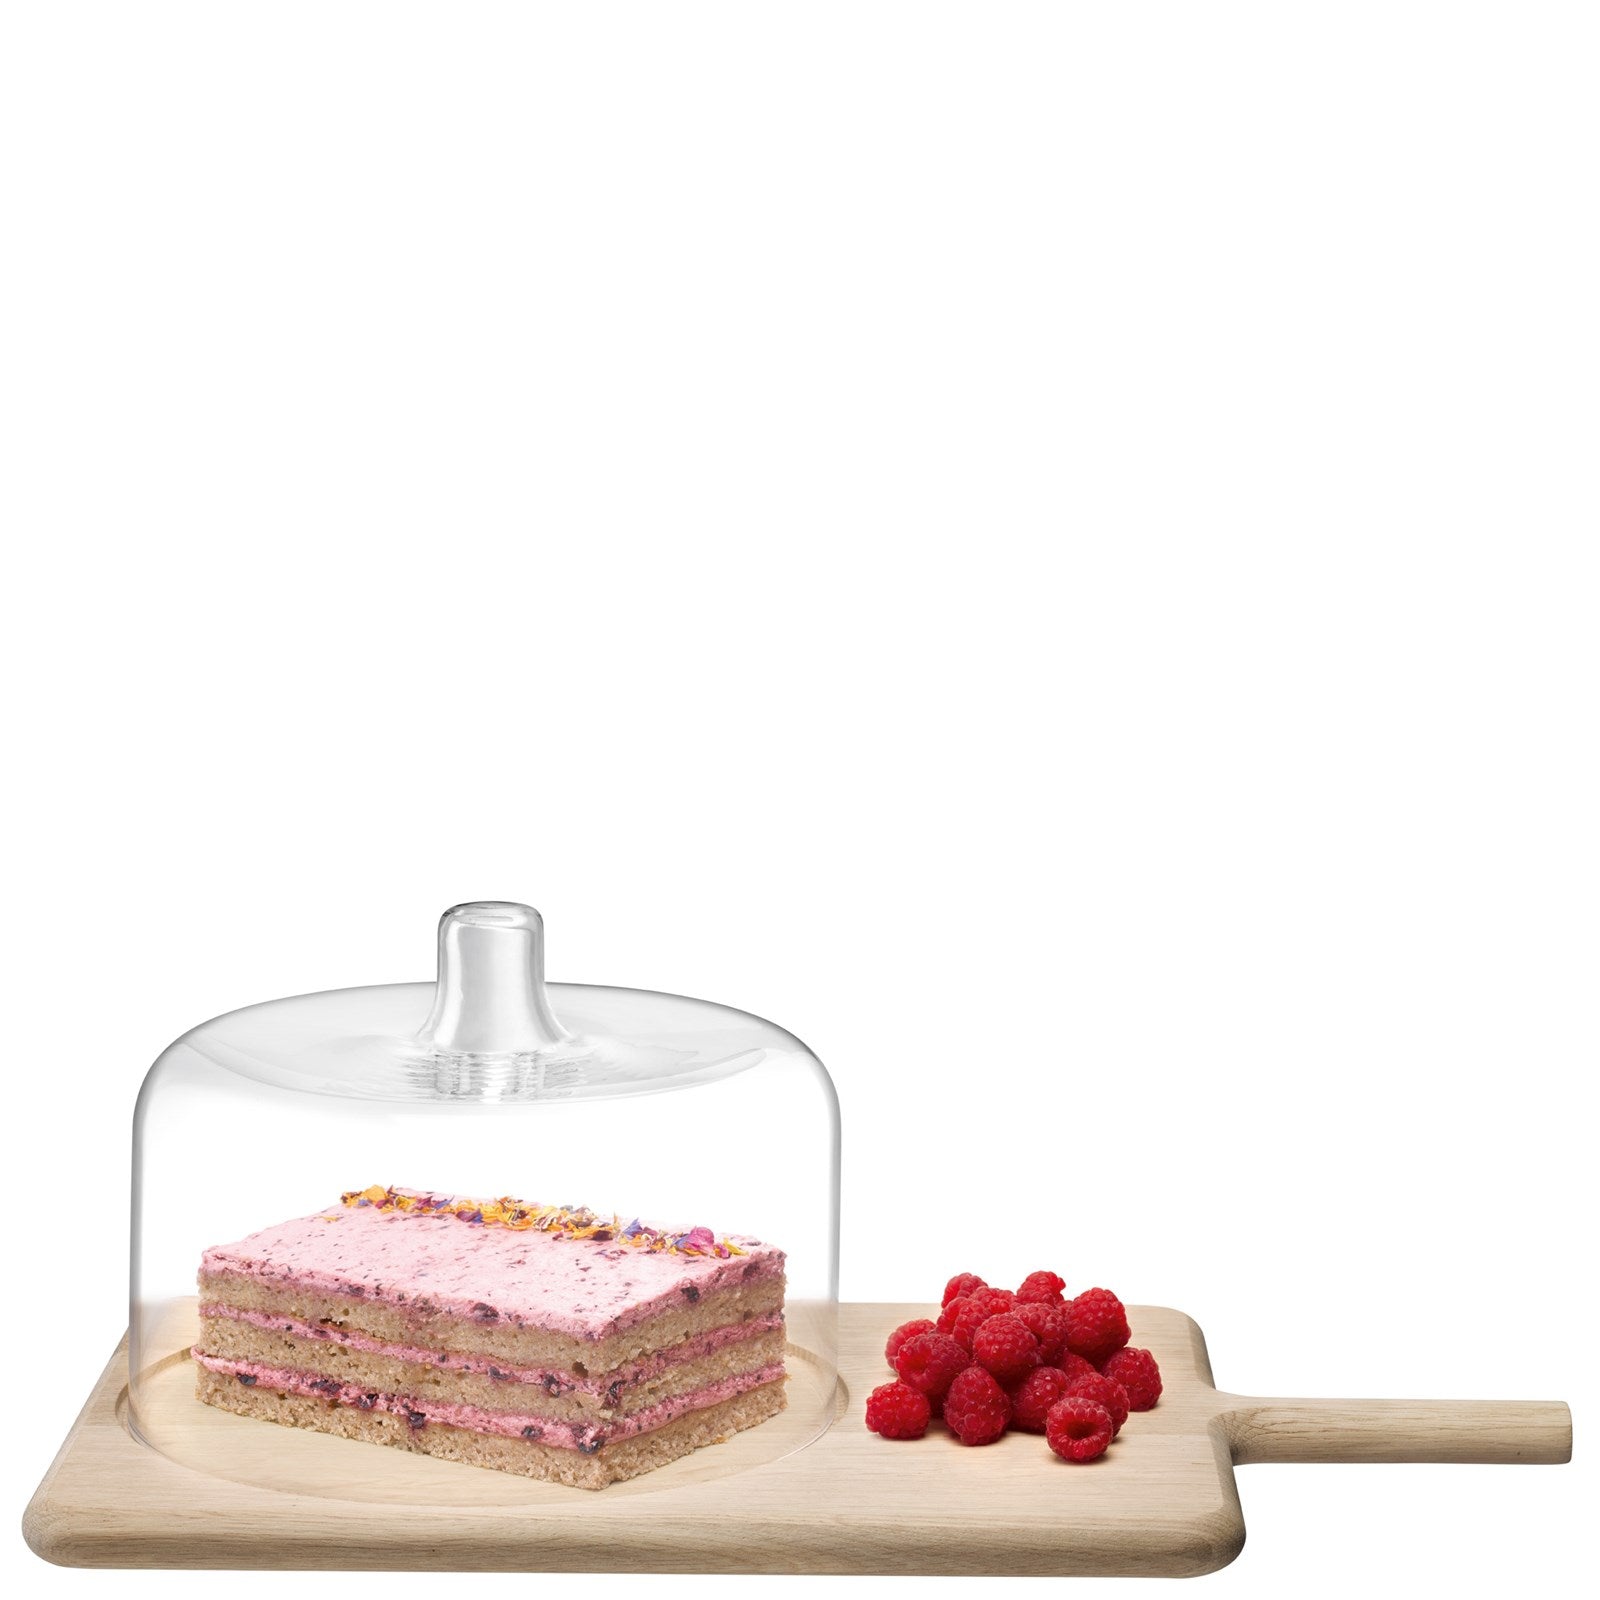 Dine Käse Dome  Brett Eiche H18.5cm L50cm B27.5cm in Eiche präsentiert im Onlineshop von KAQTU Design AG. Platte ist von LSA